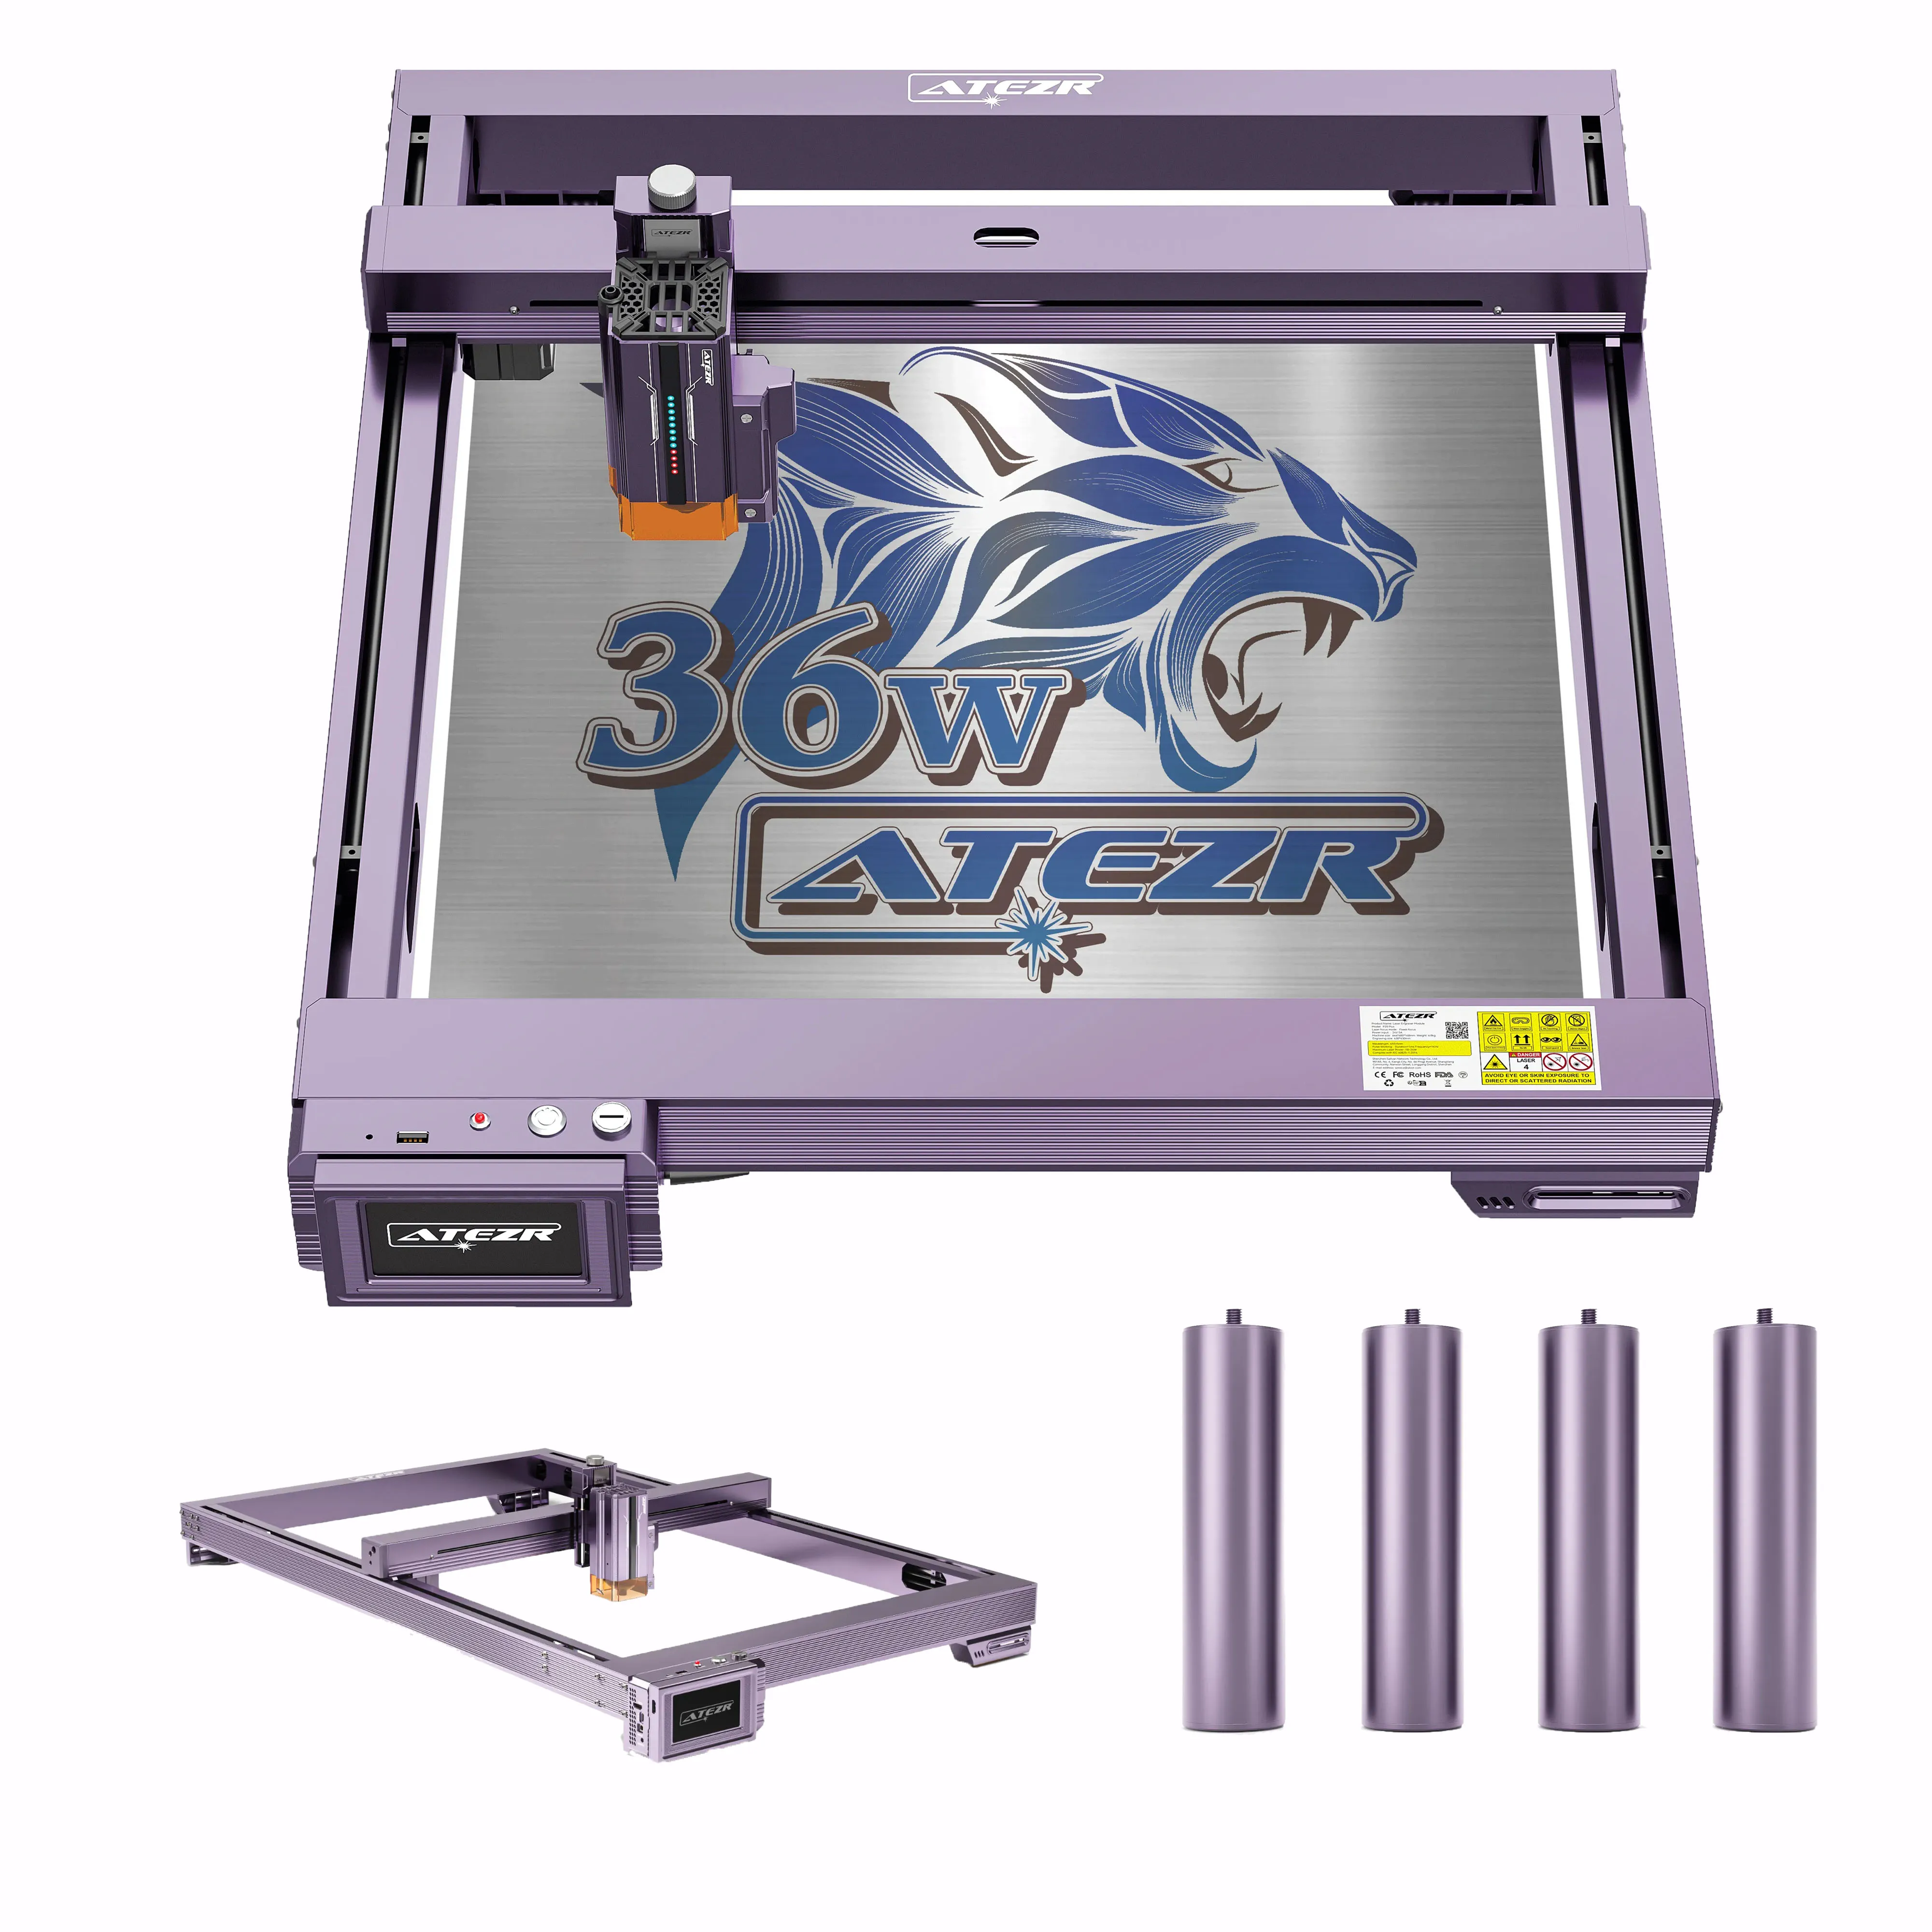 Atezr L2 36W Laser Engraver